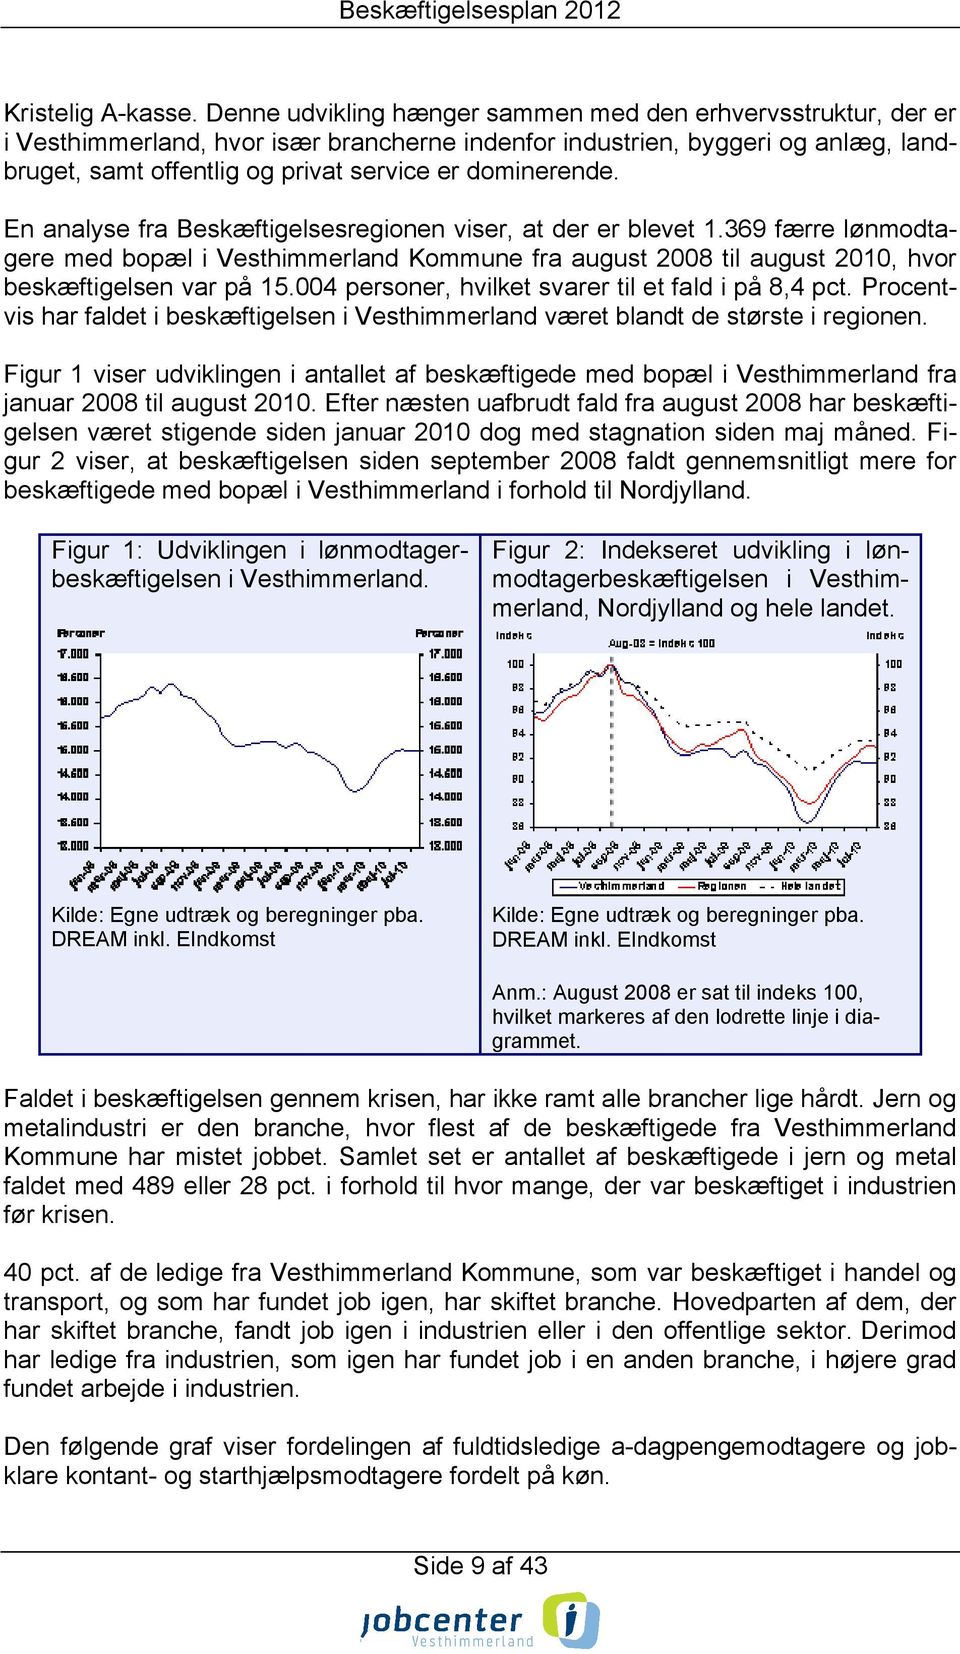 dominerende. En analyse fra Beskæftigelsesregionen viser, at der er blevet 1.369 færre lønmodtagere med bopæl i Vesthimmerland Kommune fra august 2008 til august 2010, hvor beskæftigelsen var på 15.